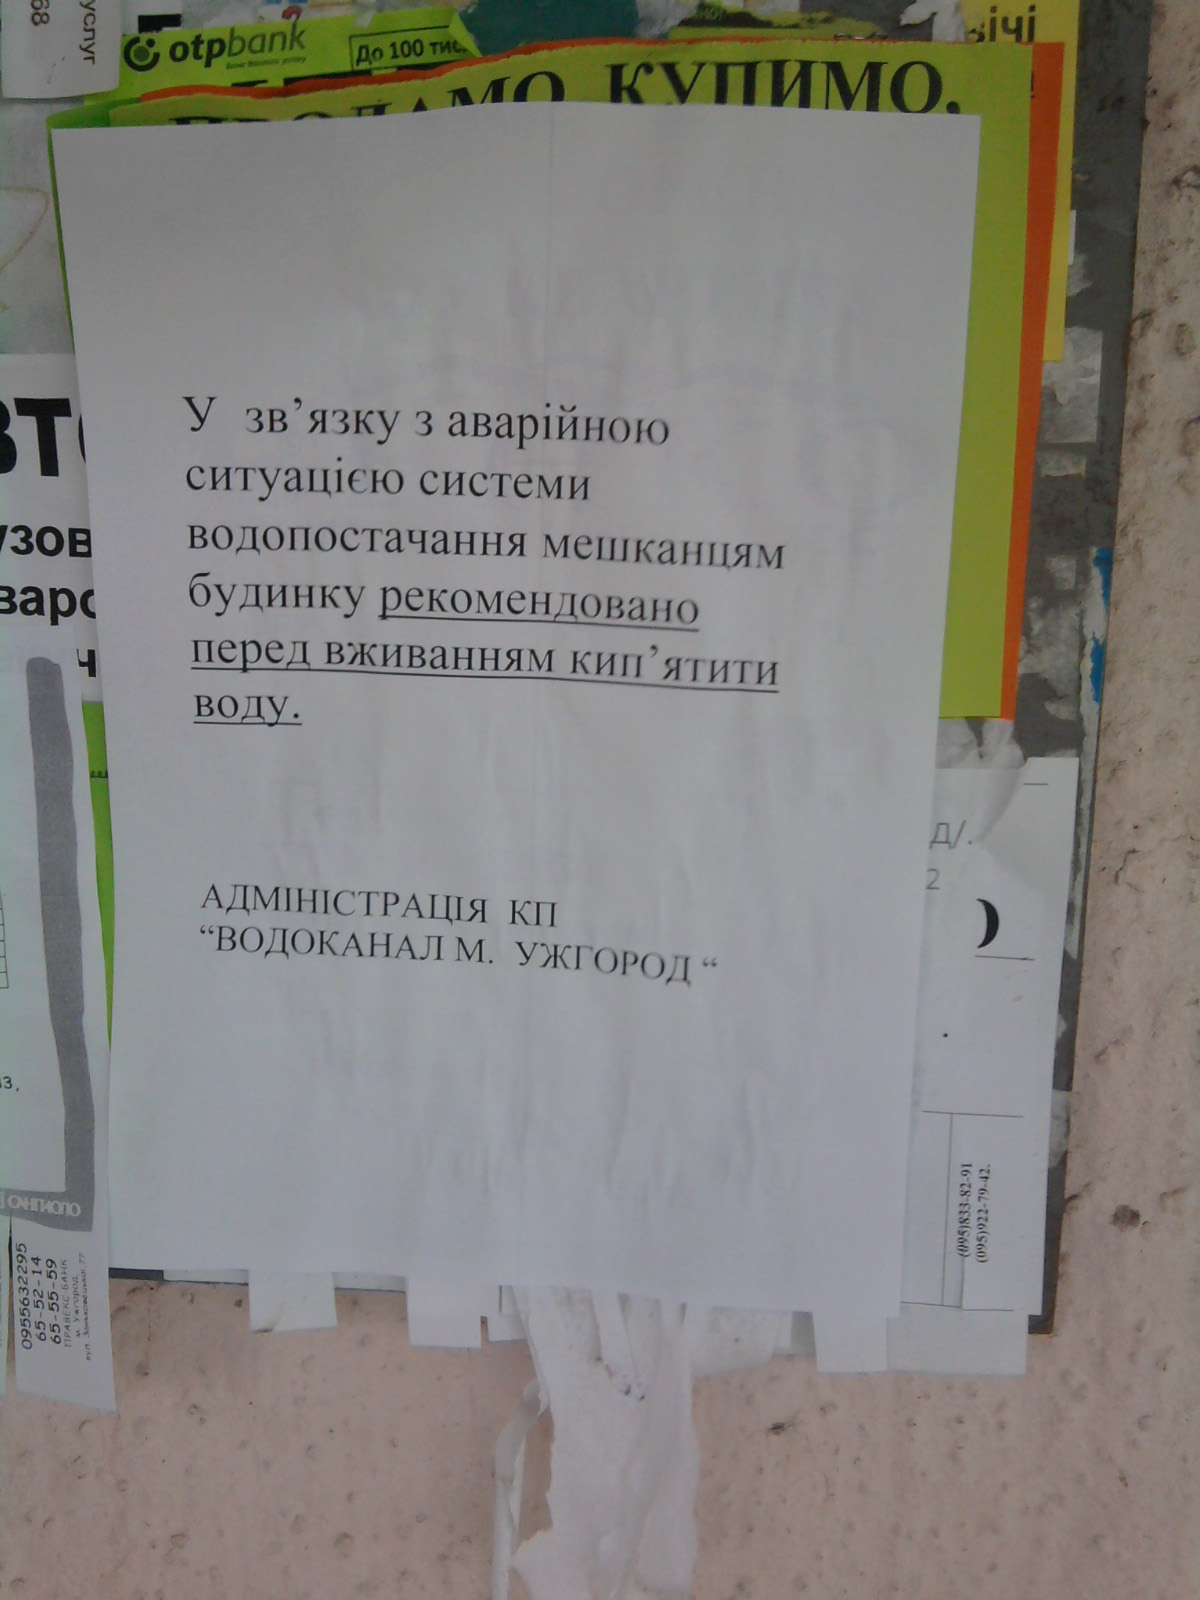 Мешканцям кількох будинків в Ужгороді треба кип